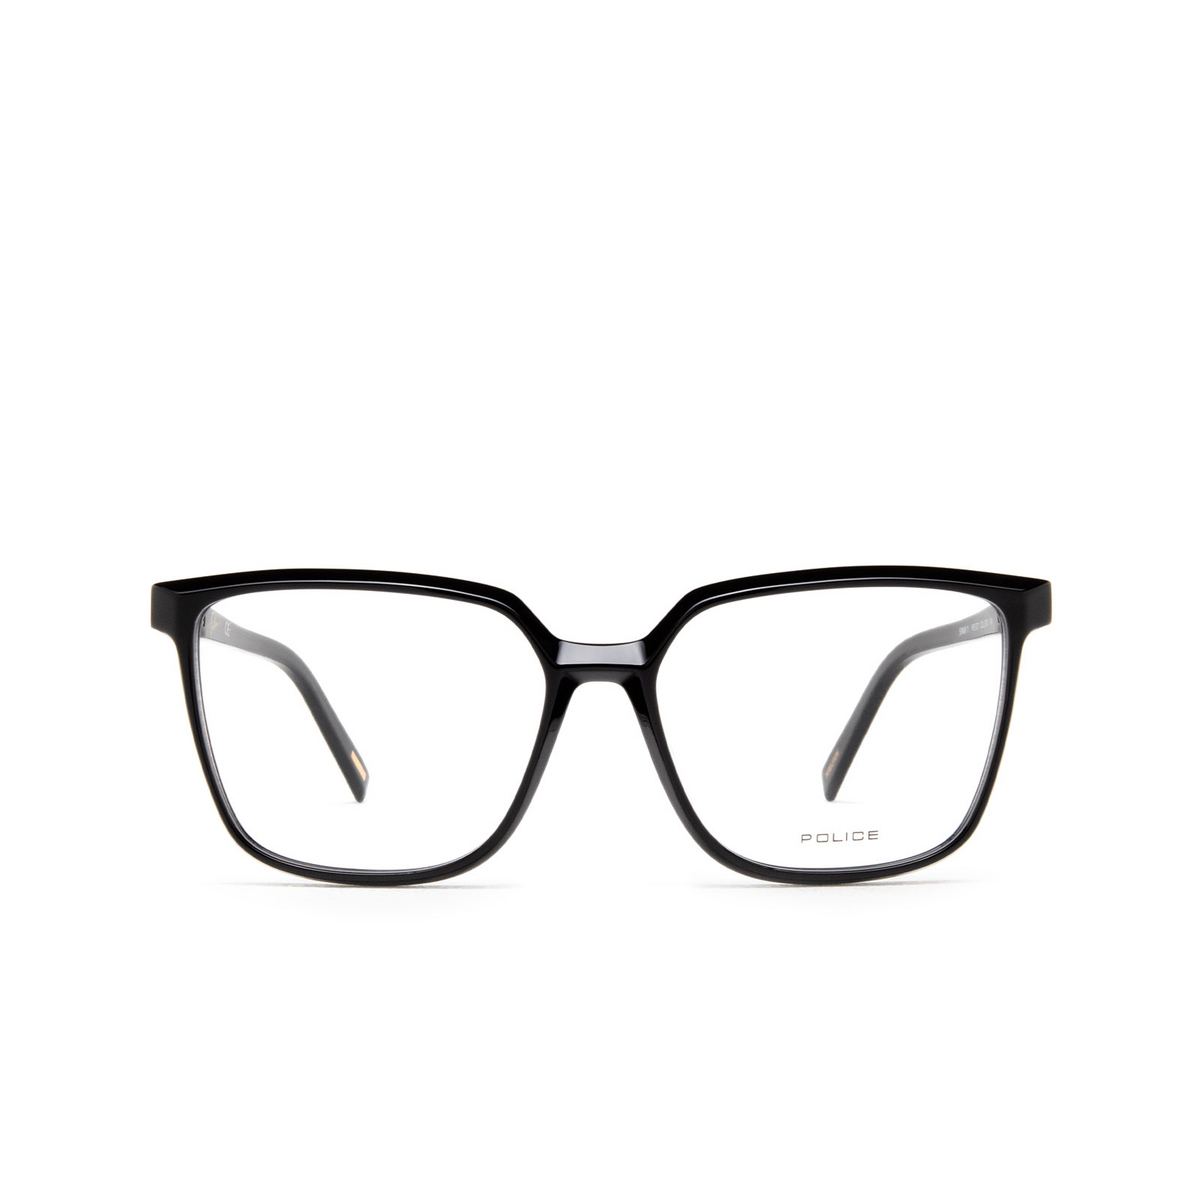 Police SWAN 1 Eyeglasses 0700 Black - front view